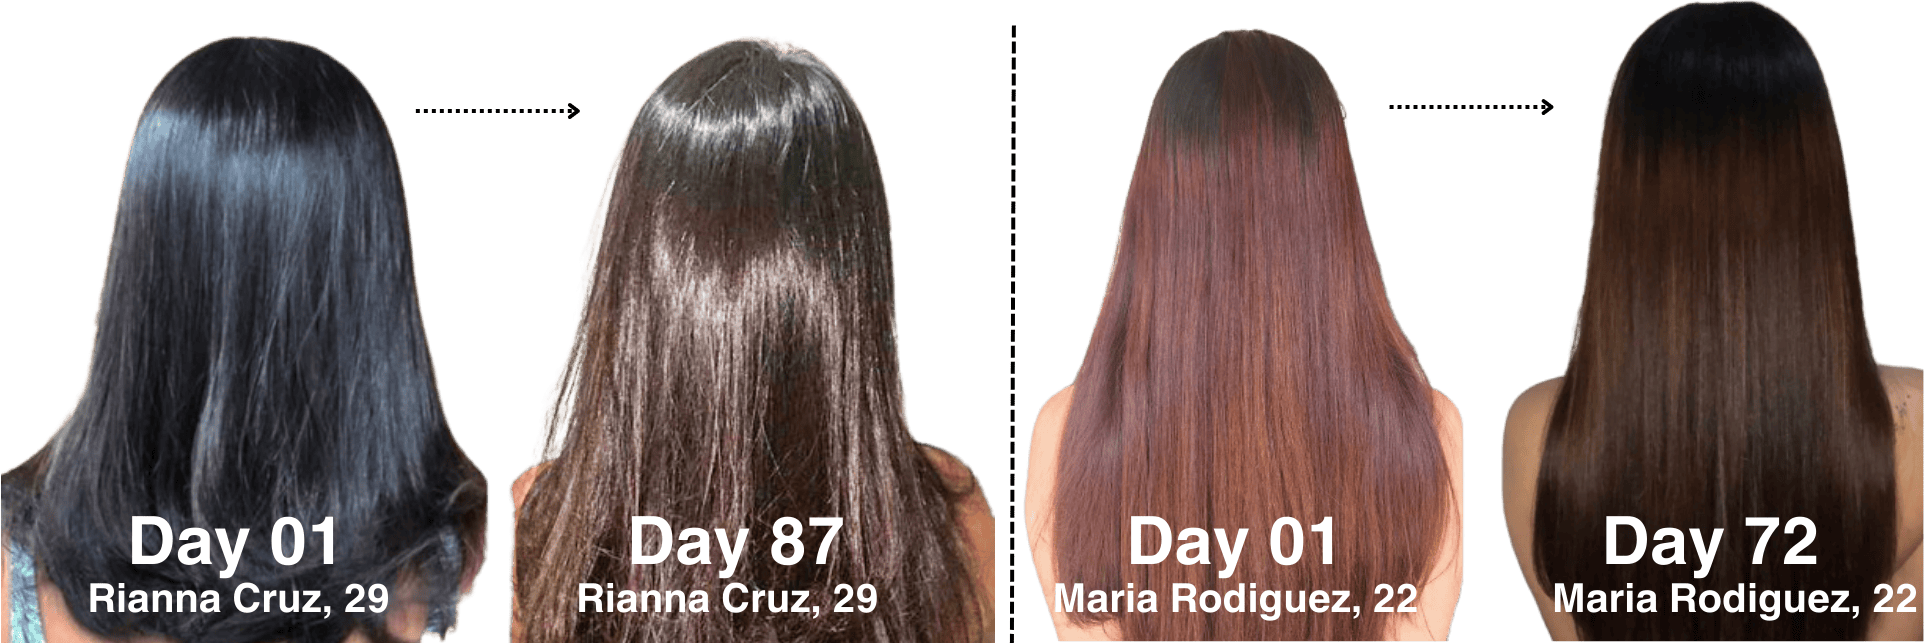 Rianna & Maria - Beautiful Hair Photos Before And After With GummBear's "Grow Hair Grow: Hair Vitamin Gummies